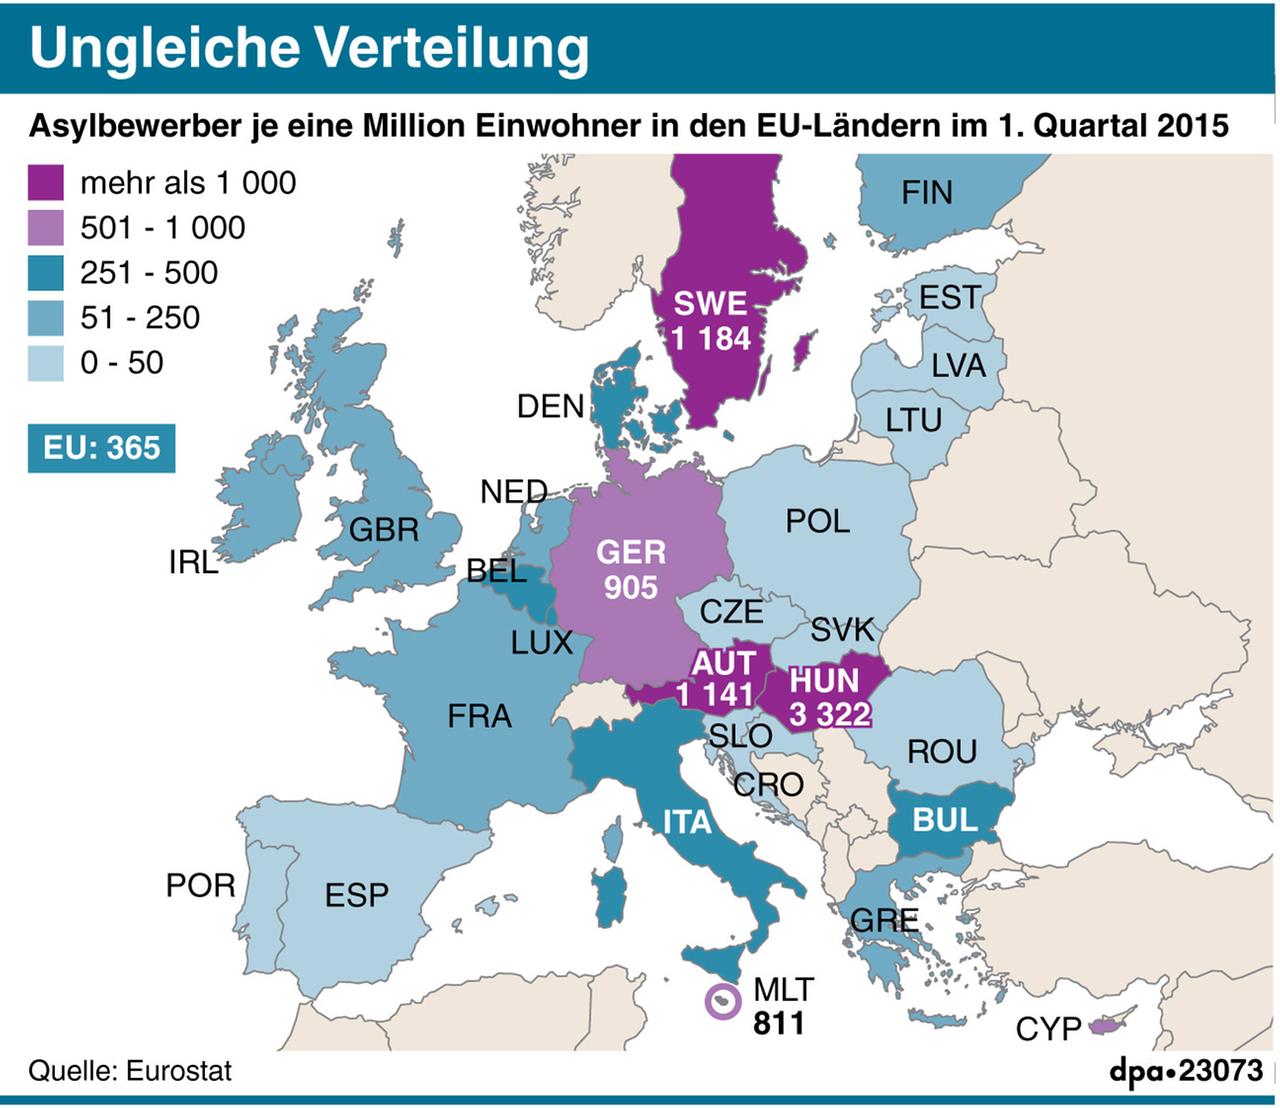 Asylbewerber je eine Million Einwohner in den EU-Ländern im 1. Quartal 2015.